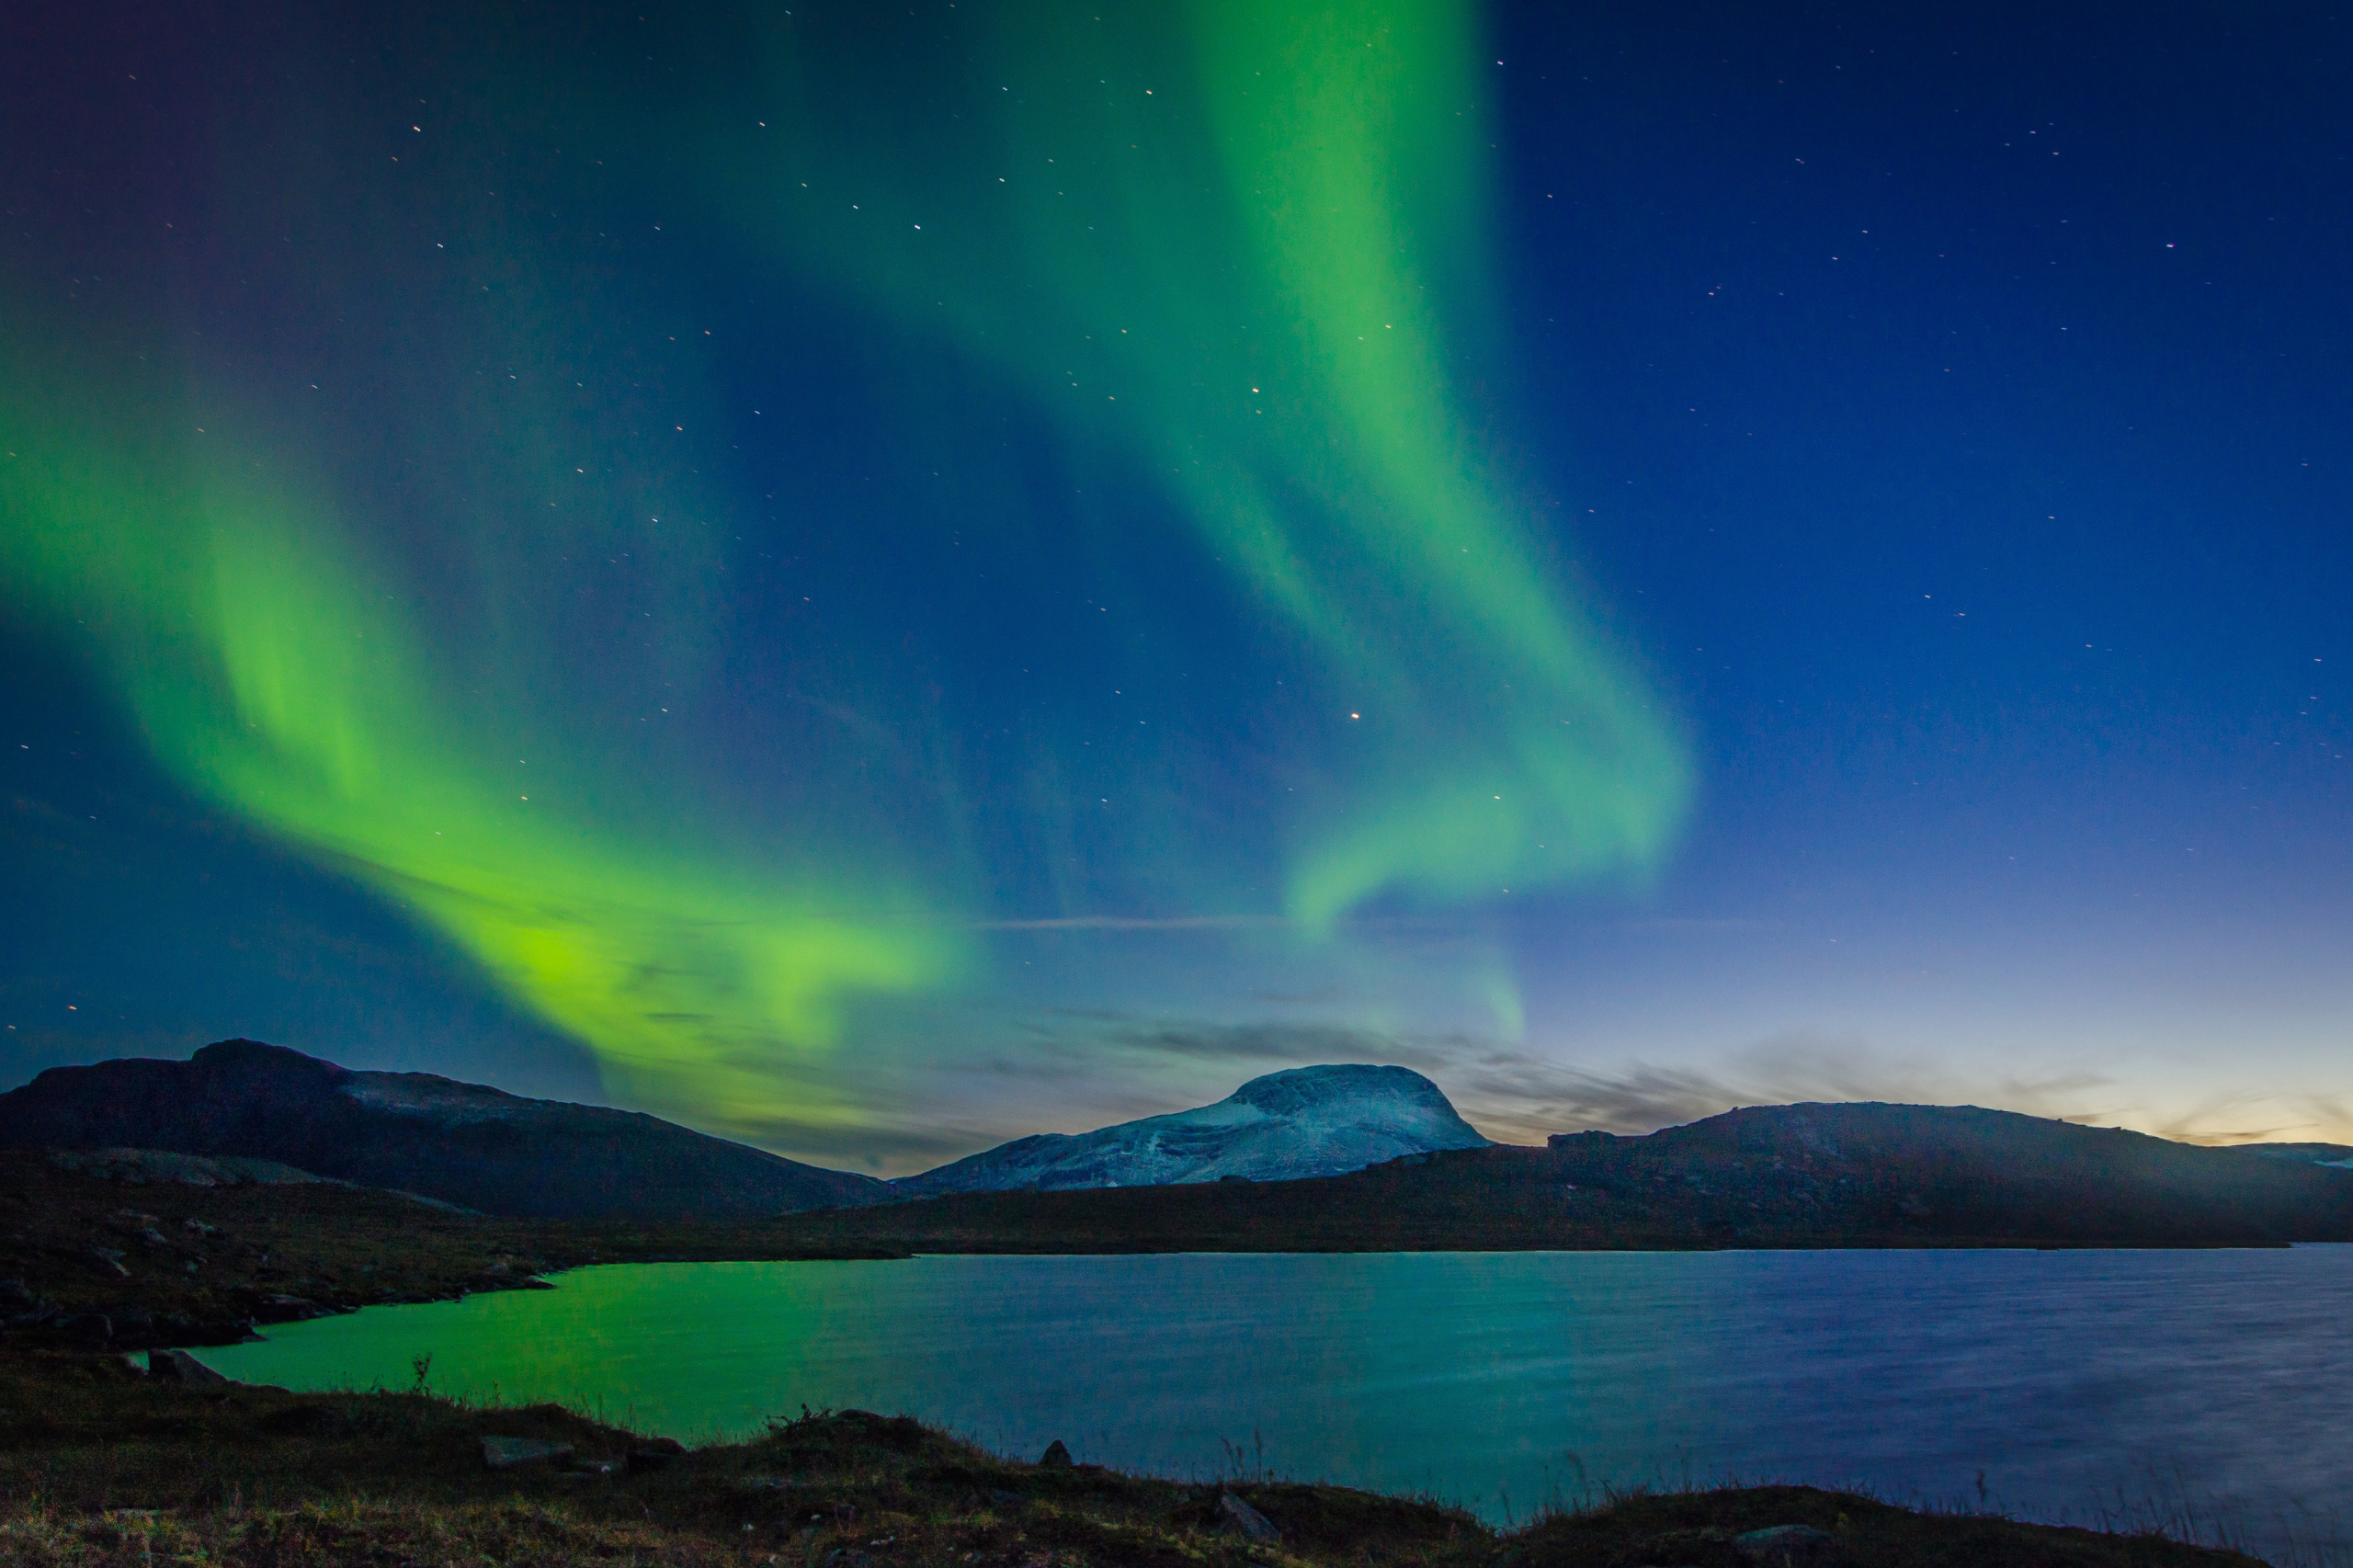  Eine der wohl schönsten und faszinierendsten Naturschauspiele, die man je zu Gesicht bekommen kann: die Nordlichter in Schweden.